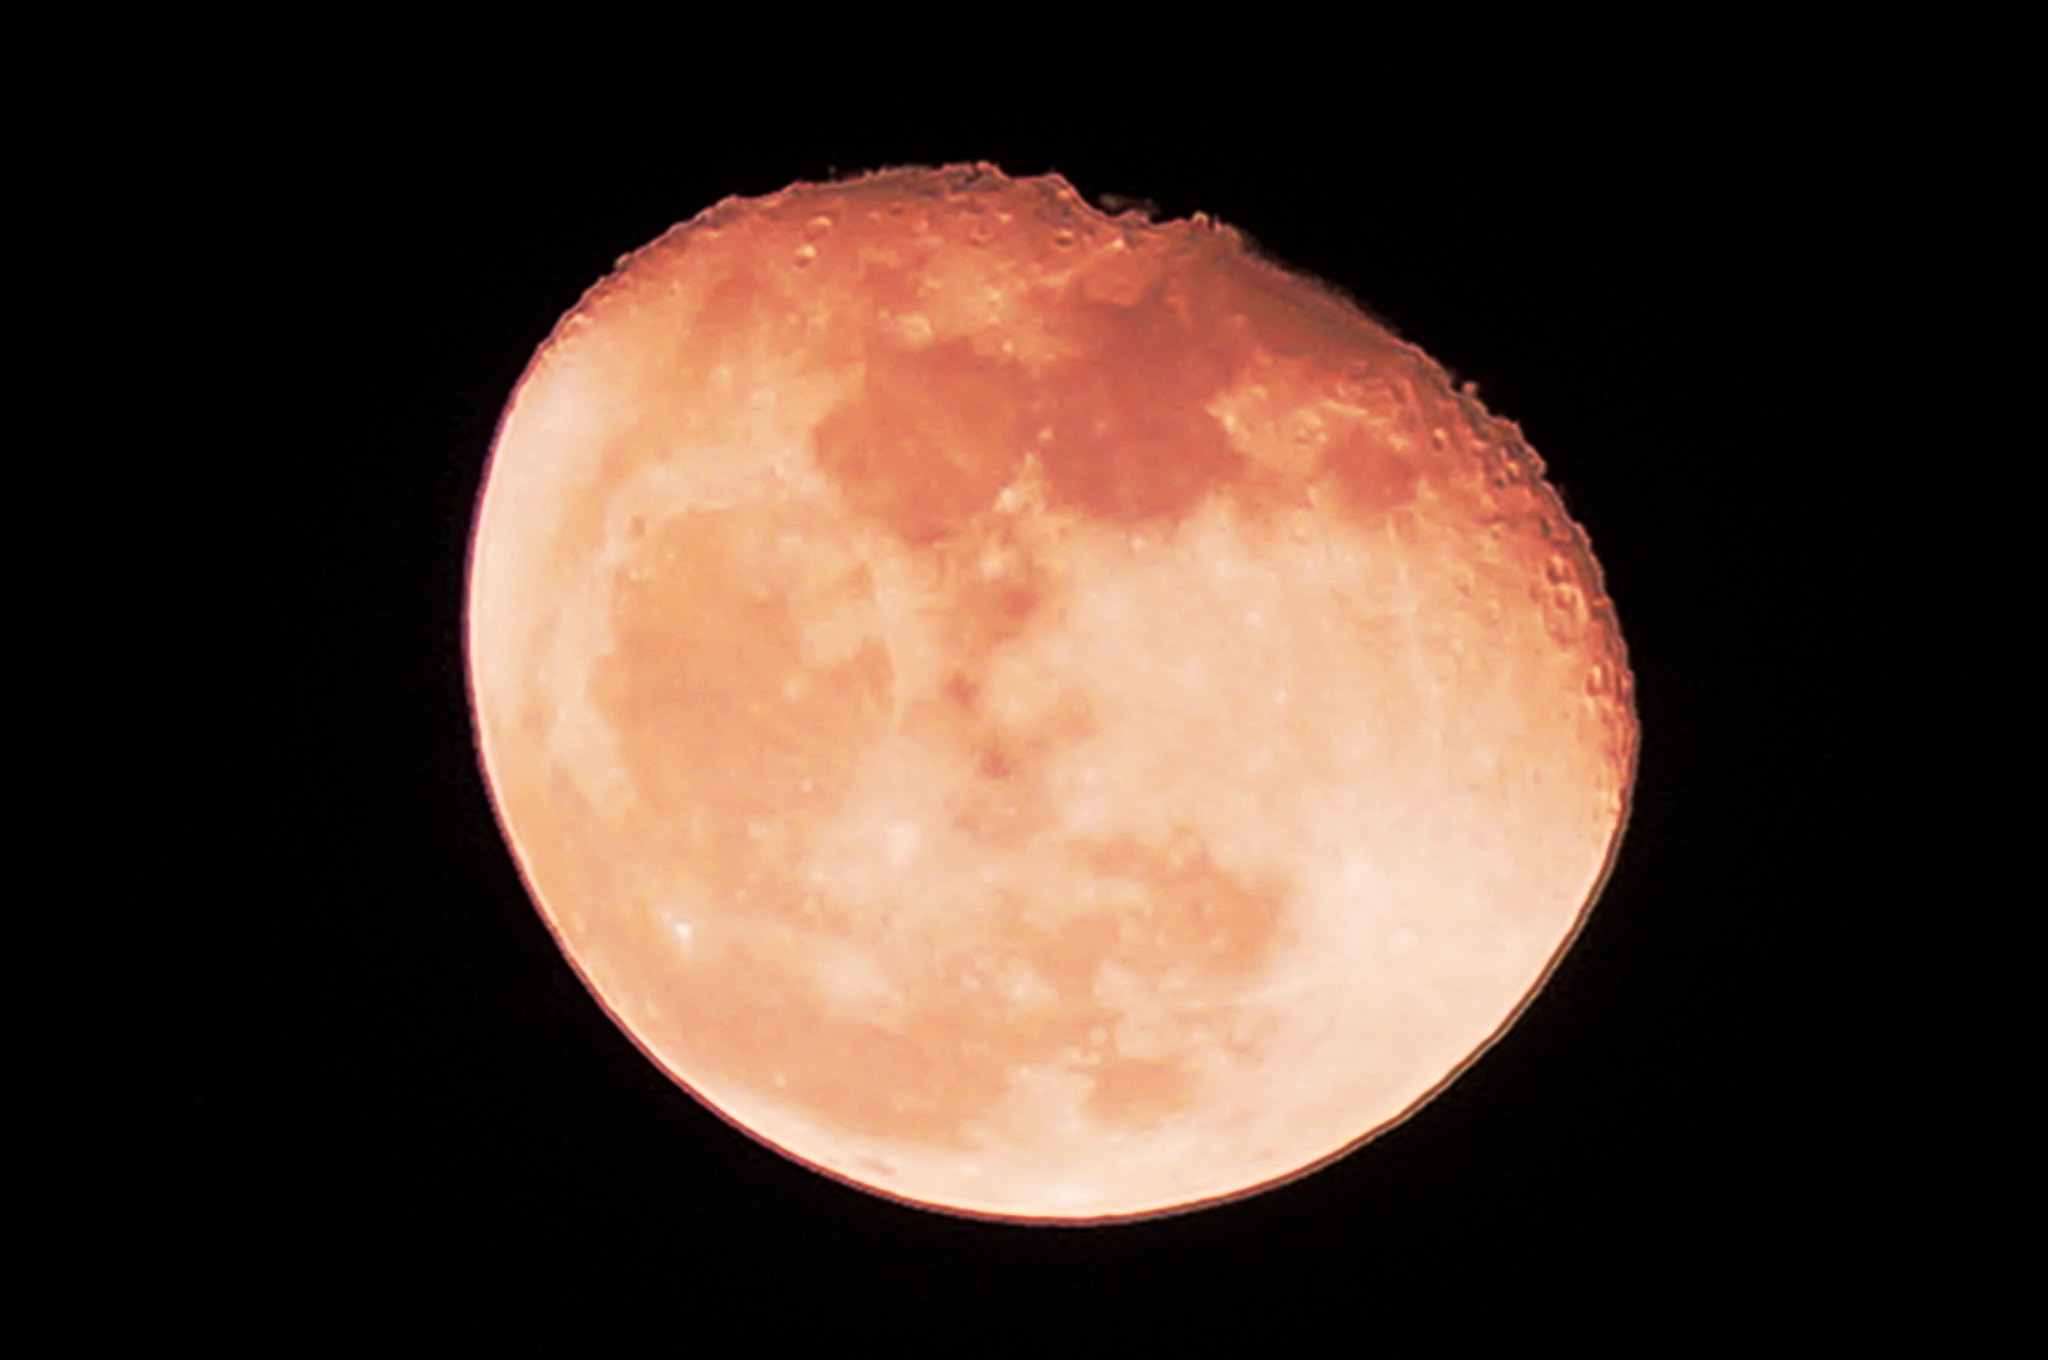 Sony SLT-A57 sample photo. Moon 2016.11.17 photography